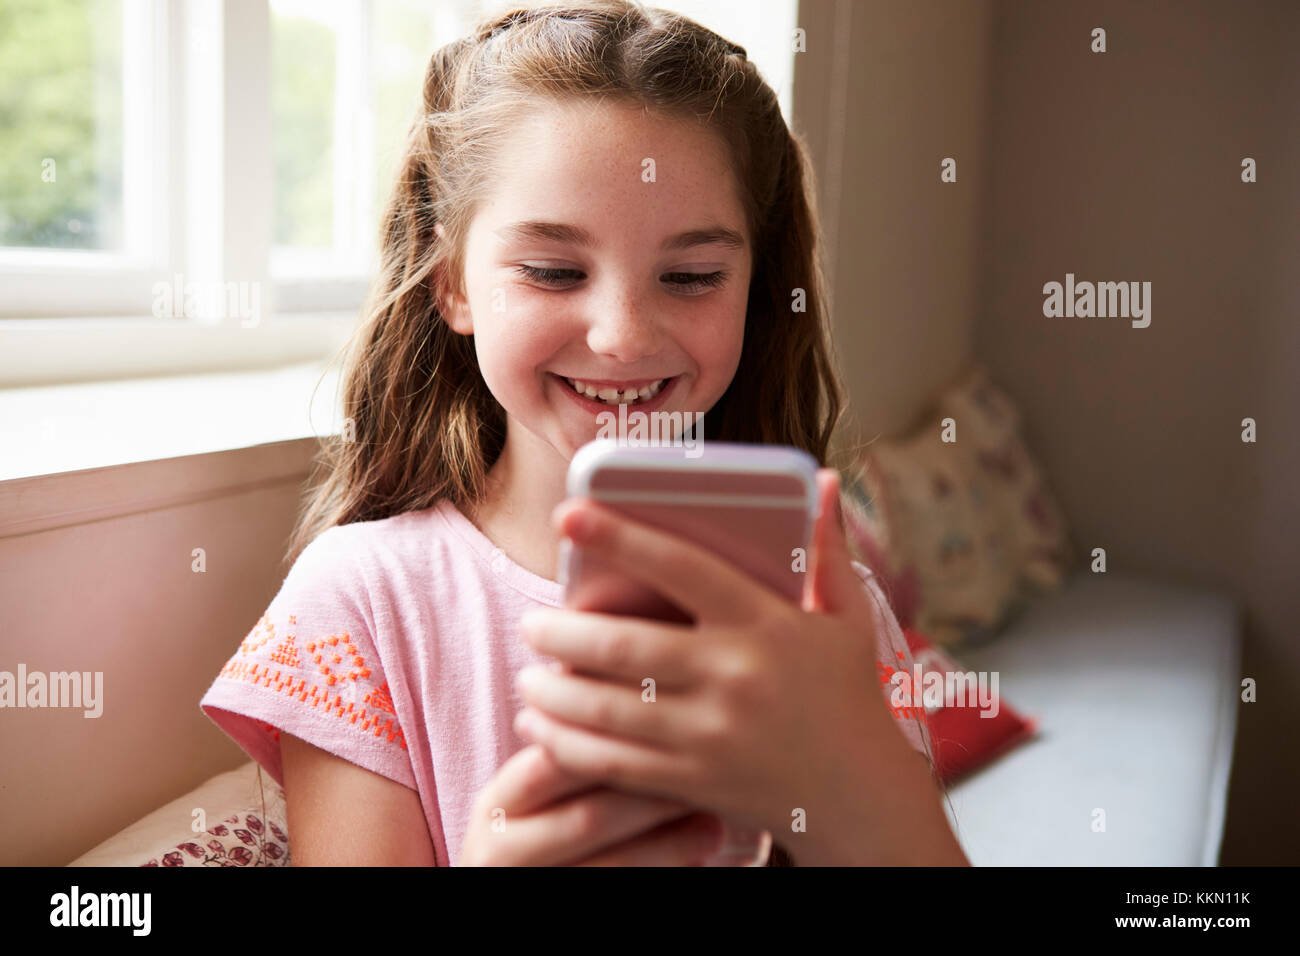 Sorridente ragazza seduta sul sedile finestra Riproduzione di gioco sul telefono cellulare Foto Stock